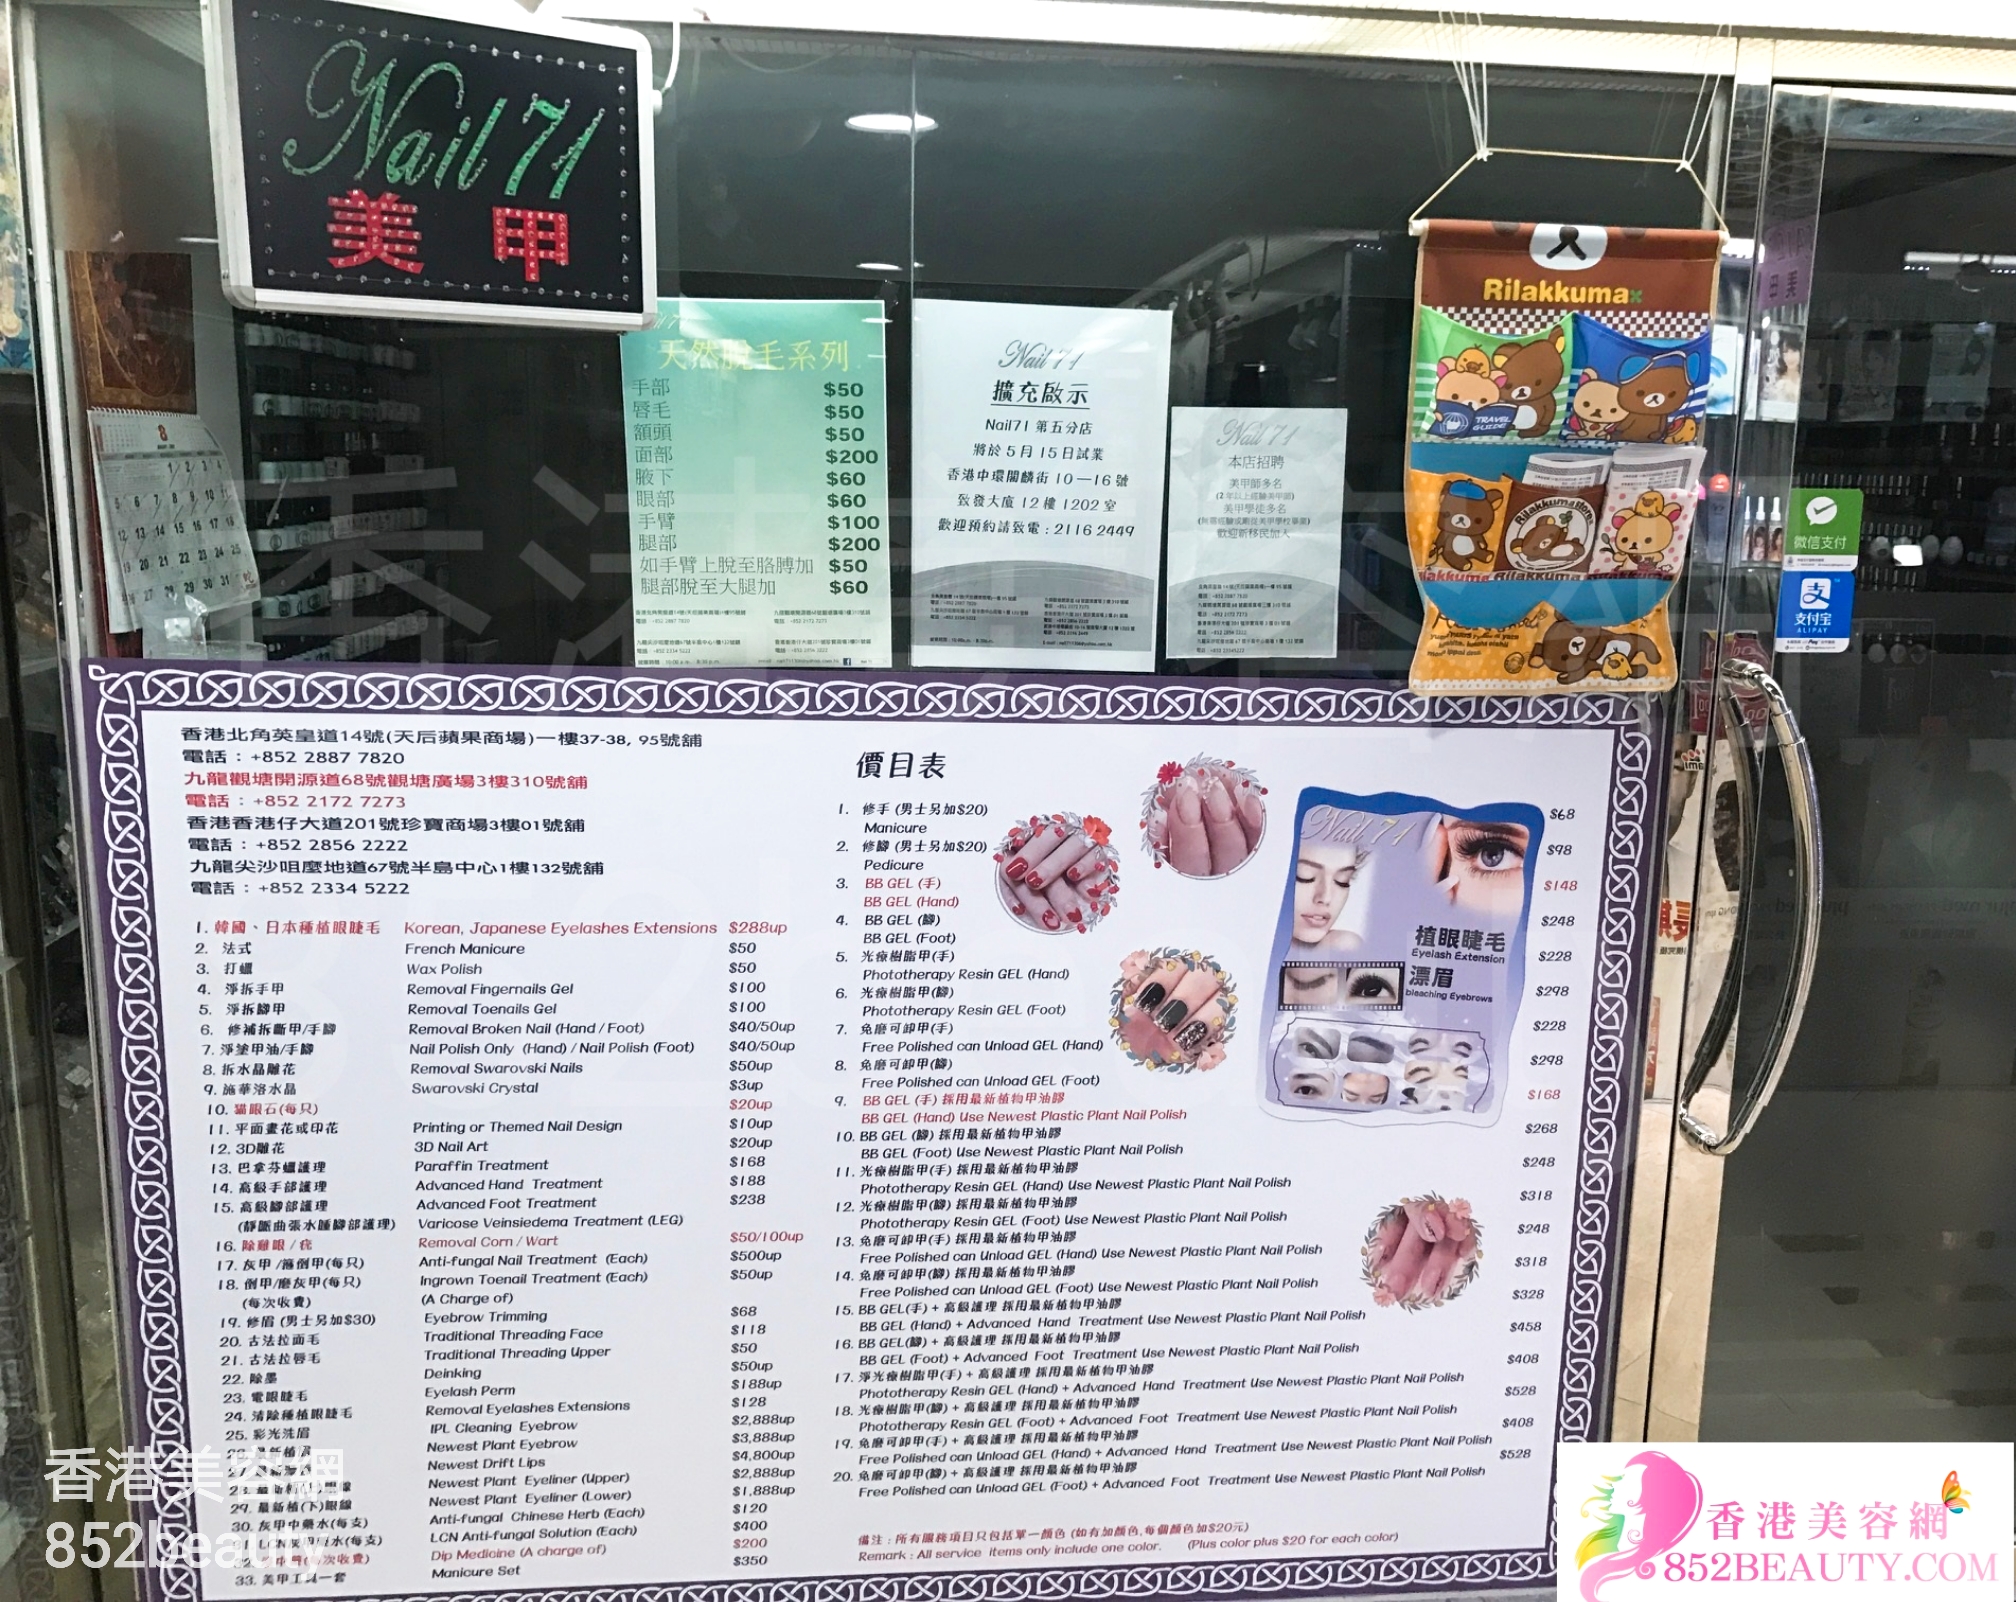 香港美容網 Hong Kong Beauty Salon 美容院 / 美容師: Nail 71 (觀塘店)